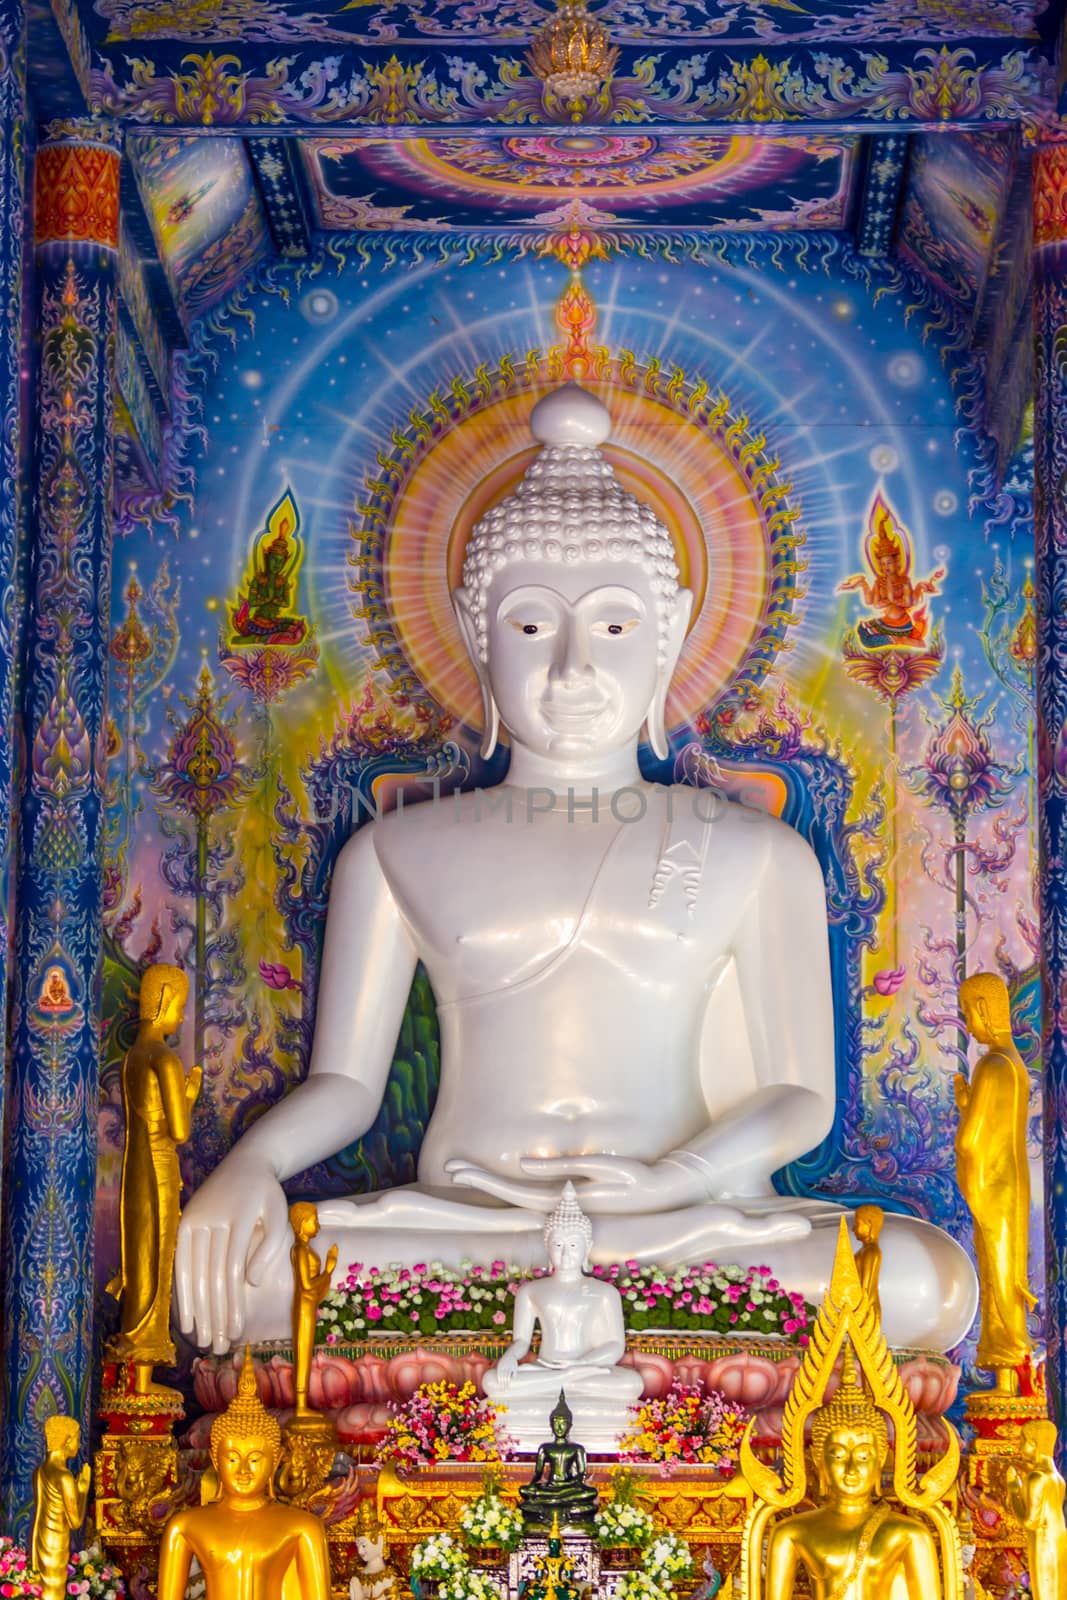 white Buddha image by nattapatt